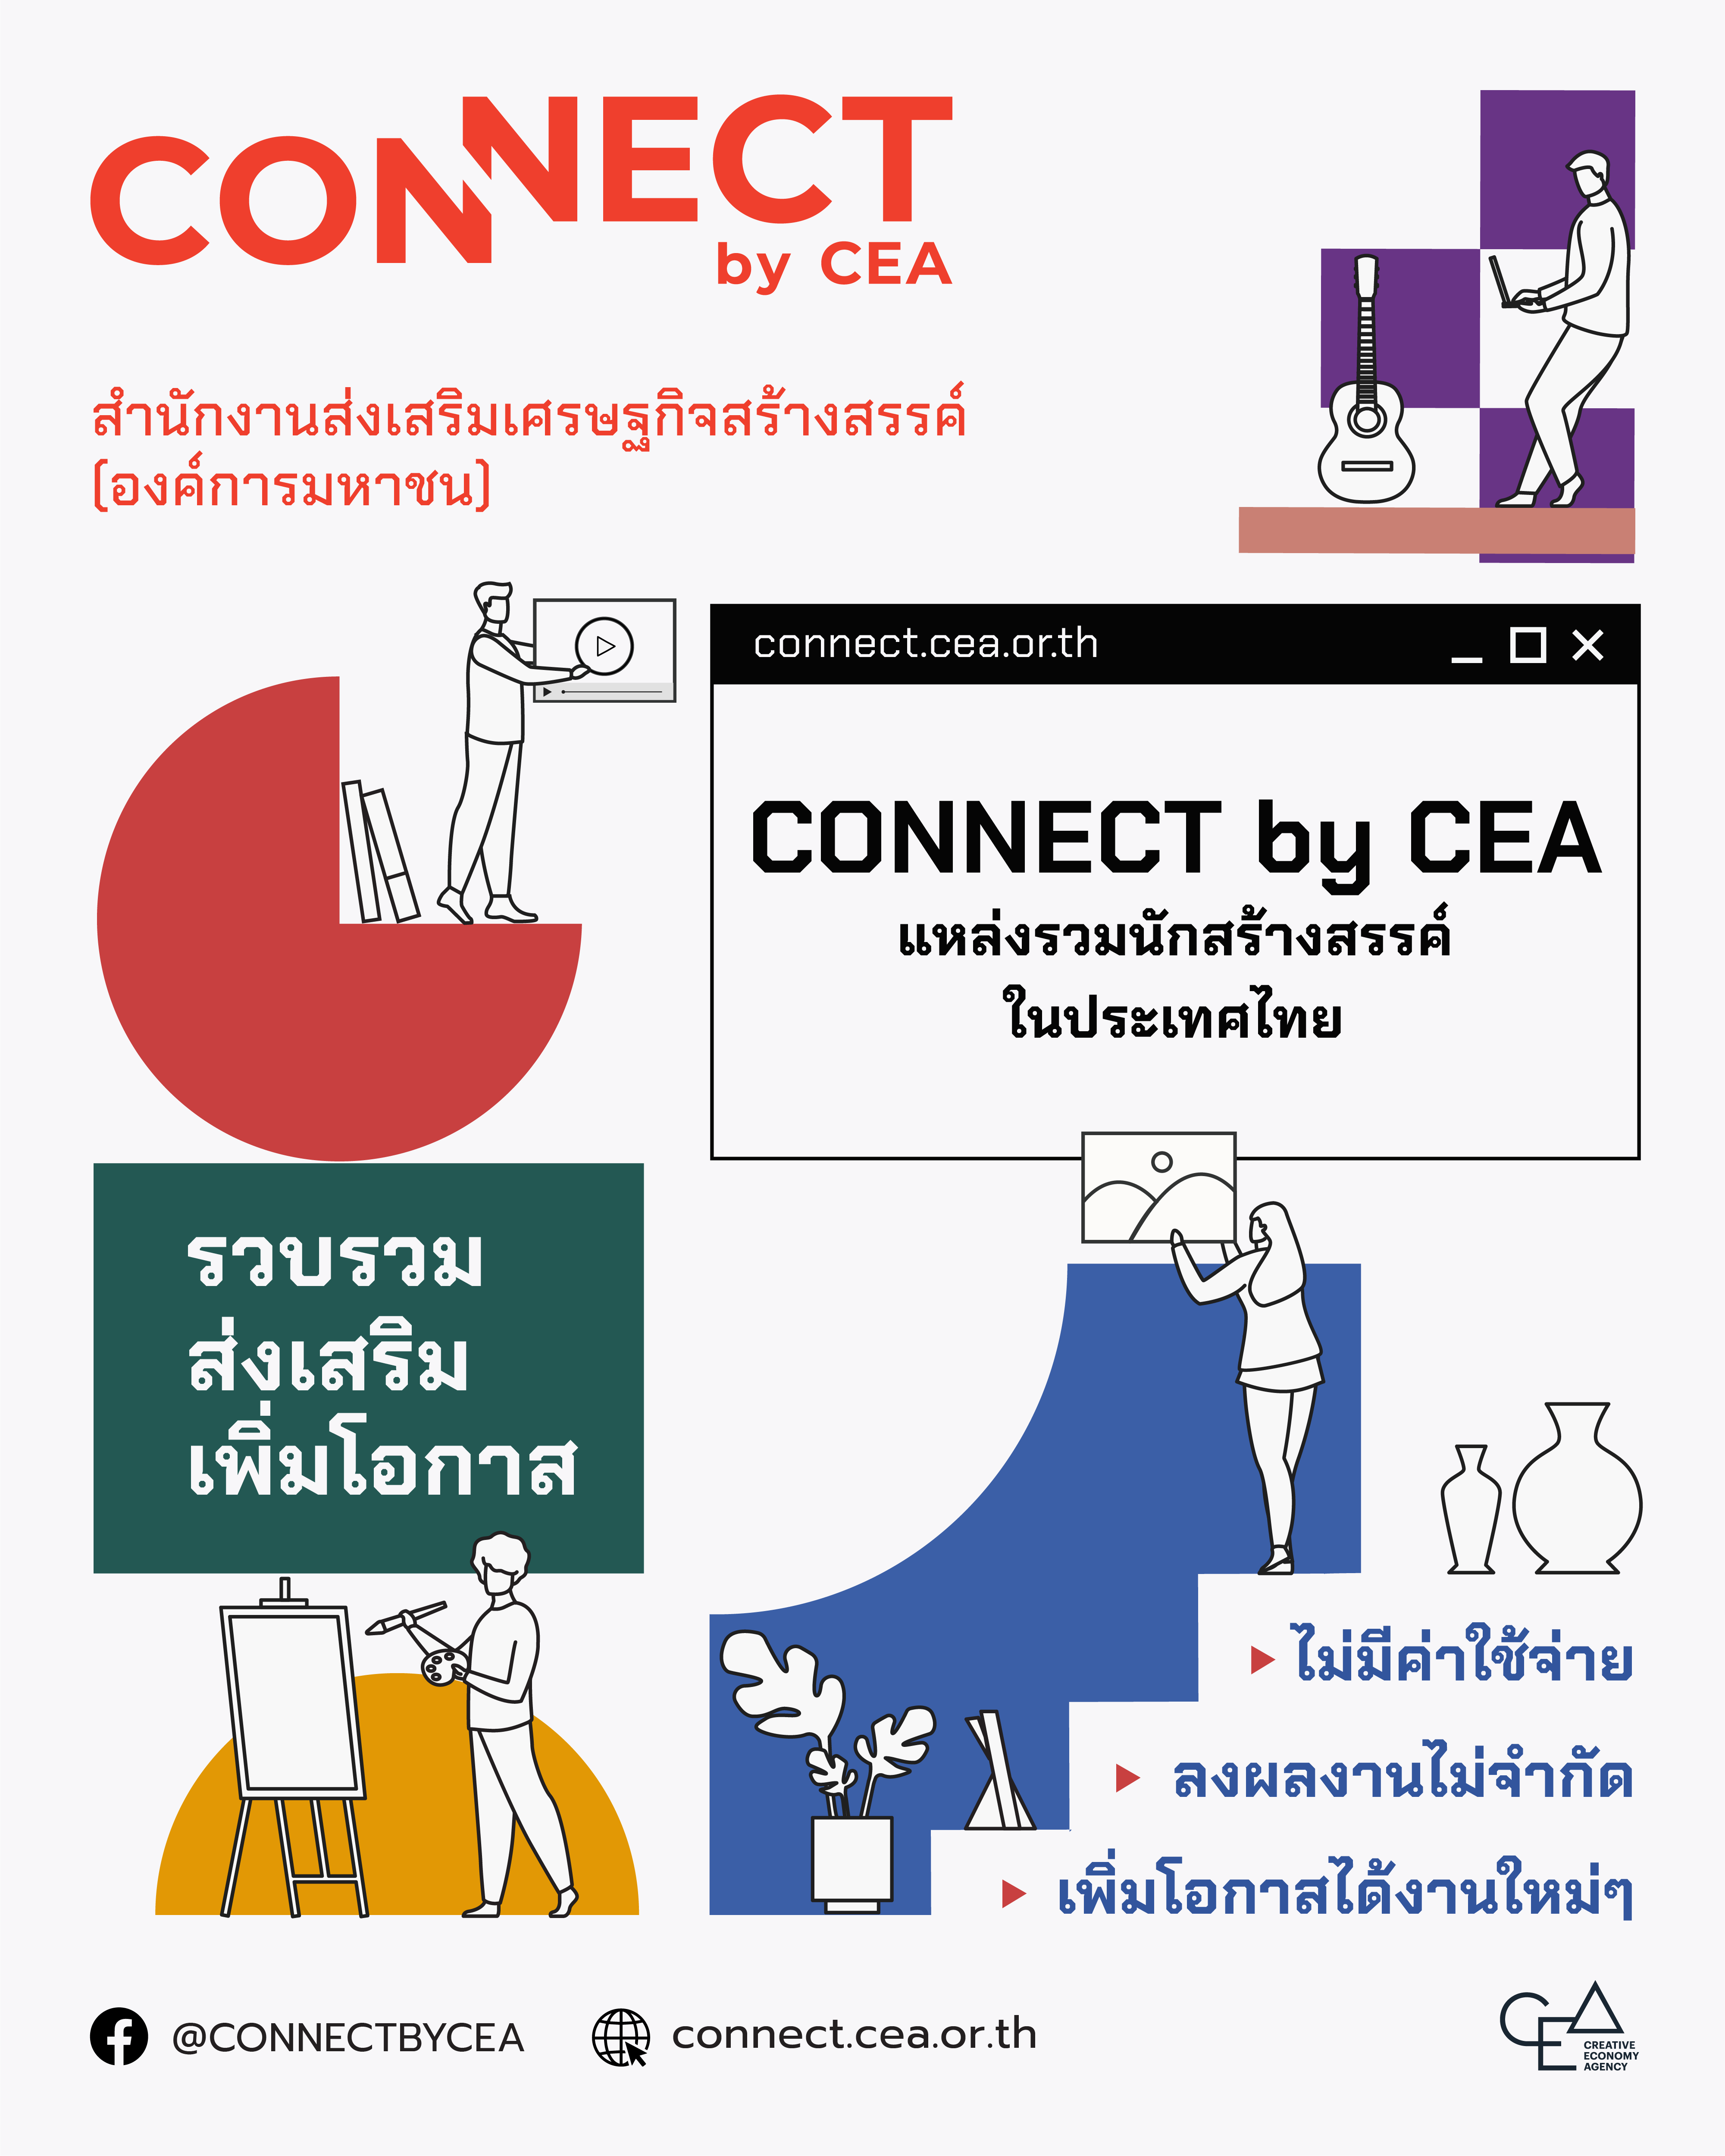 CEA เปิดตัวเว็บไซต์ Connect by CEA  แพลตฟอร์มสำหรับนักสร้างสรรค์ทุกสาขา ขับเคลื่อนอุตสาหกรรมสร้างสรรค์ไทย